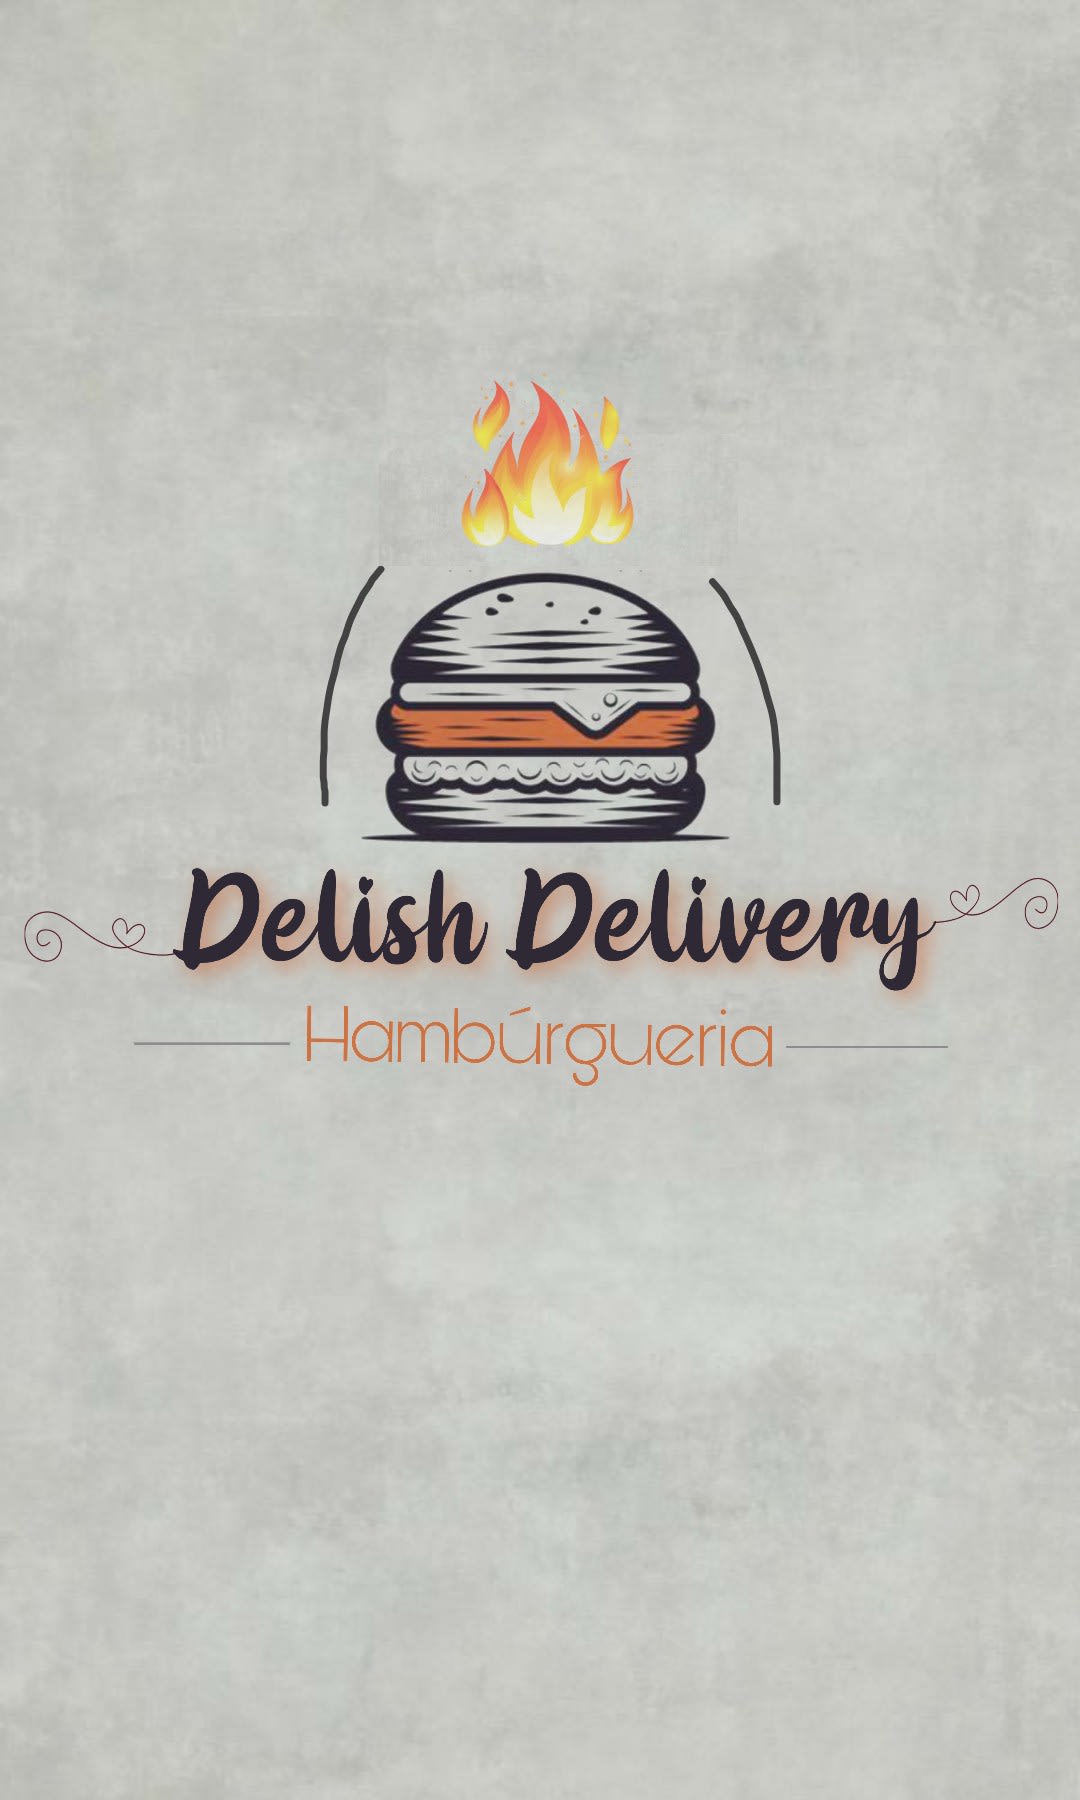 Delish Delivery